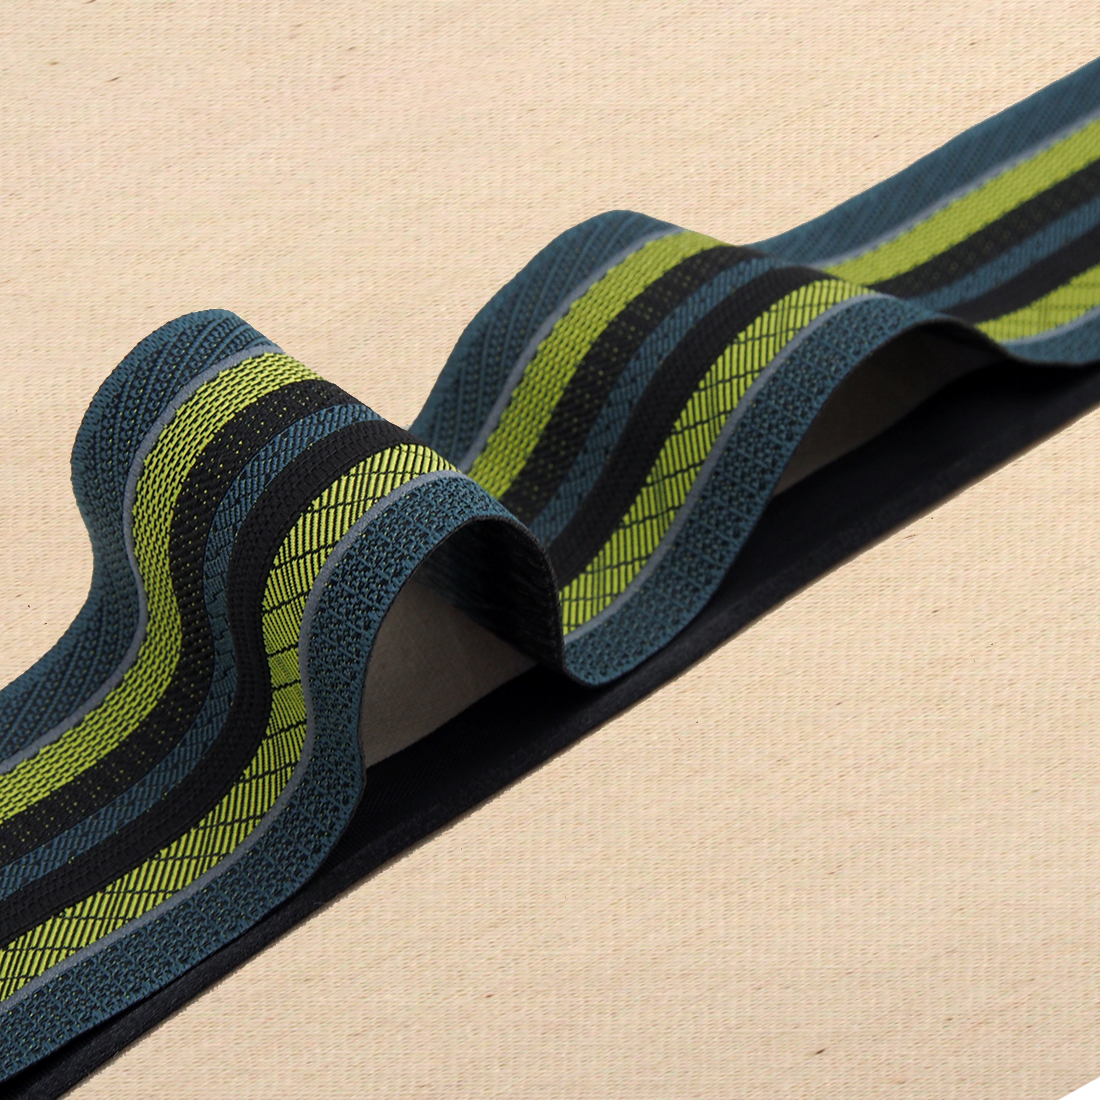 Man sieht ein gestreiftes Band mit neun Bahnen. Die Farben sind petrol, grün/gelb, schwarz und silber reflektieren.